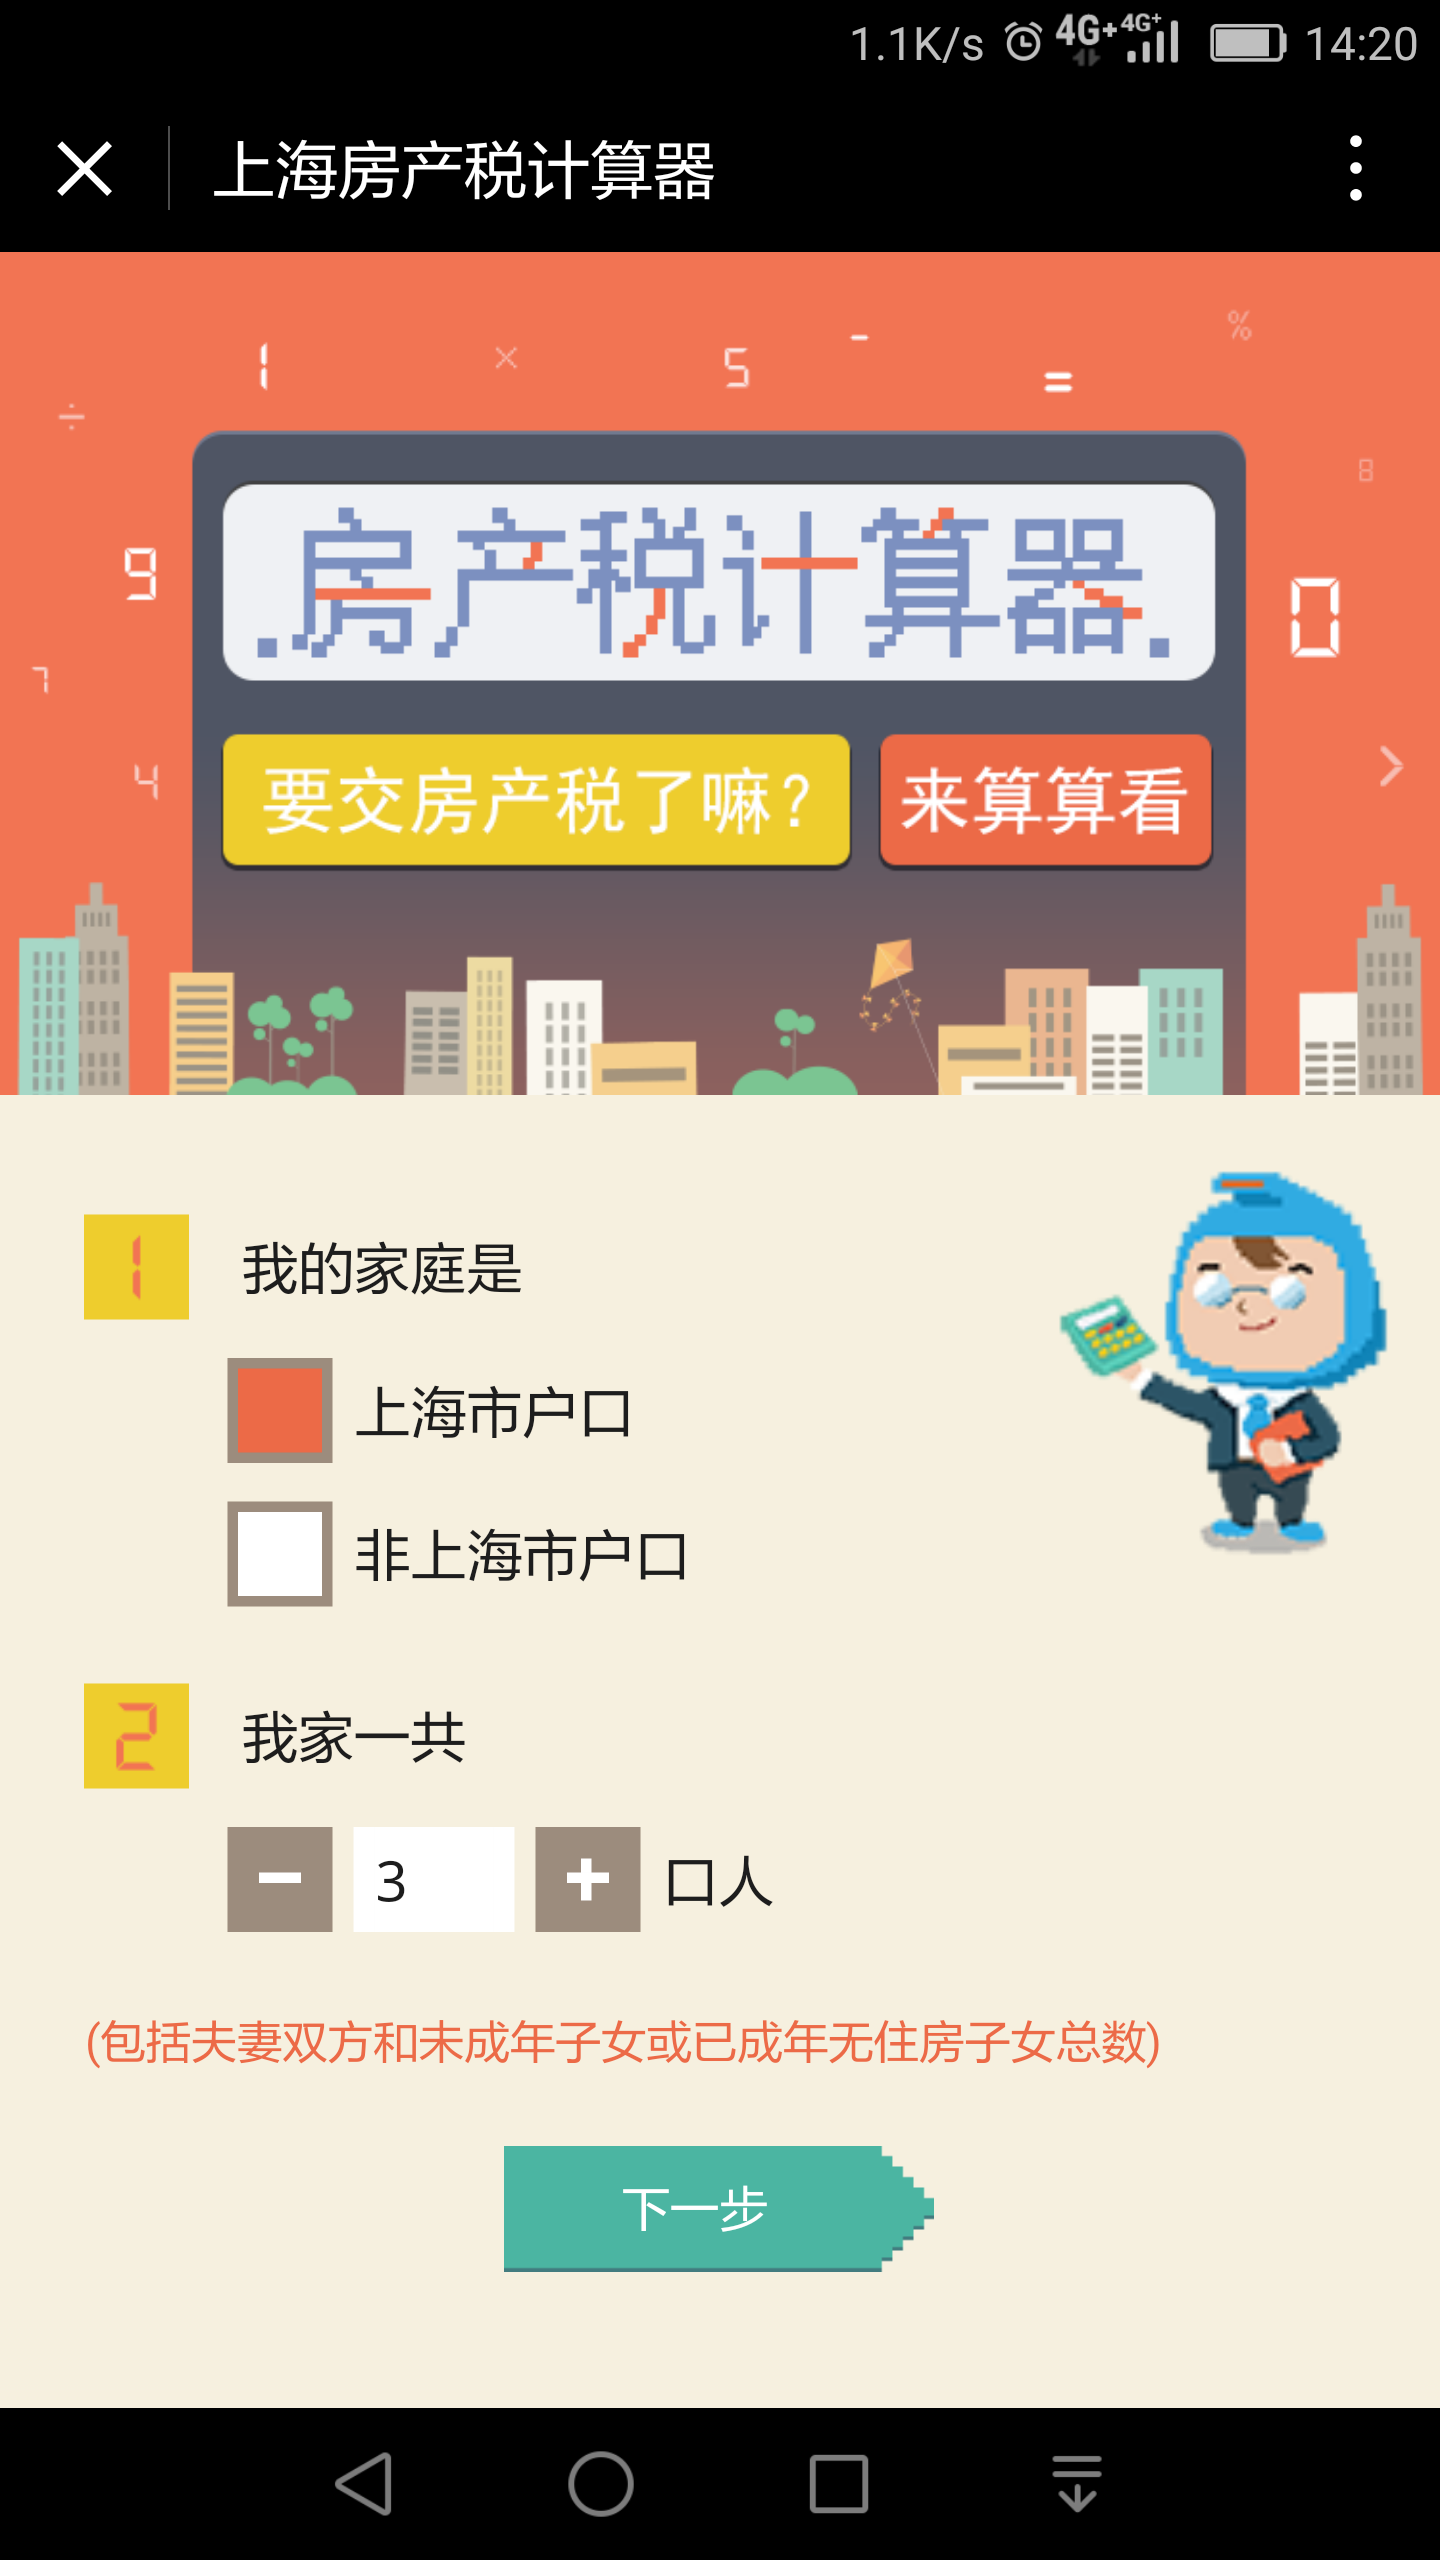 上海房产税计算器_上海房产税计算器小程序_上海房产税计算器微信小程序